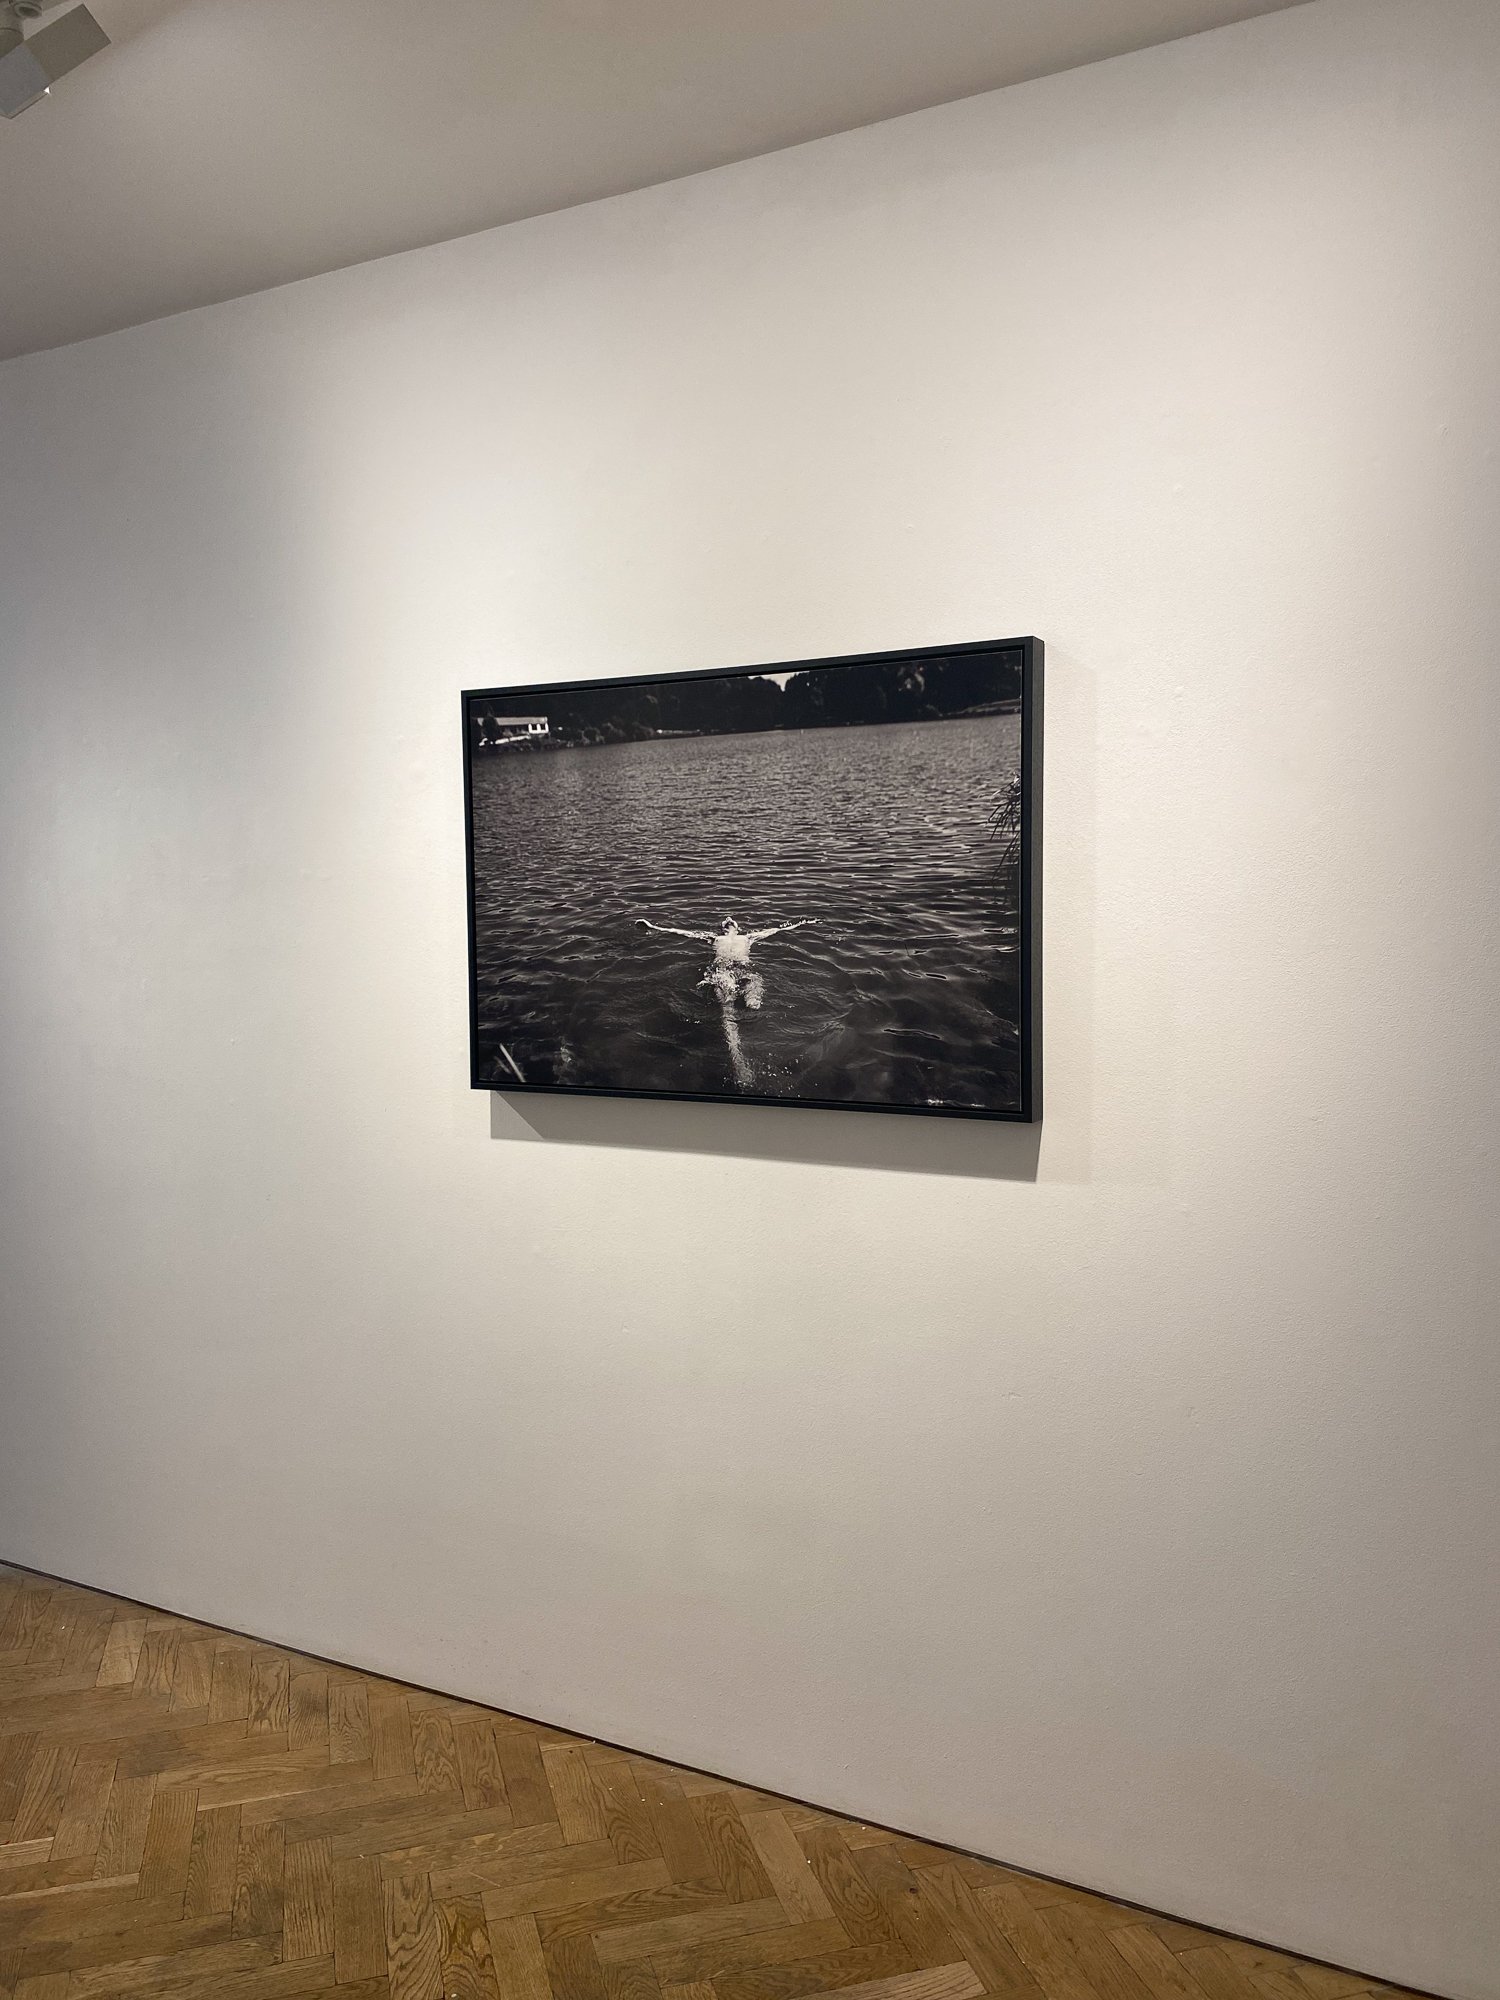   MARVEL , Webber Gallery, London, UK, 2021. 